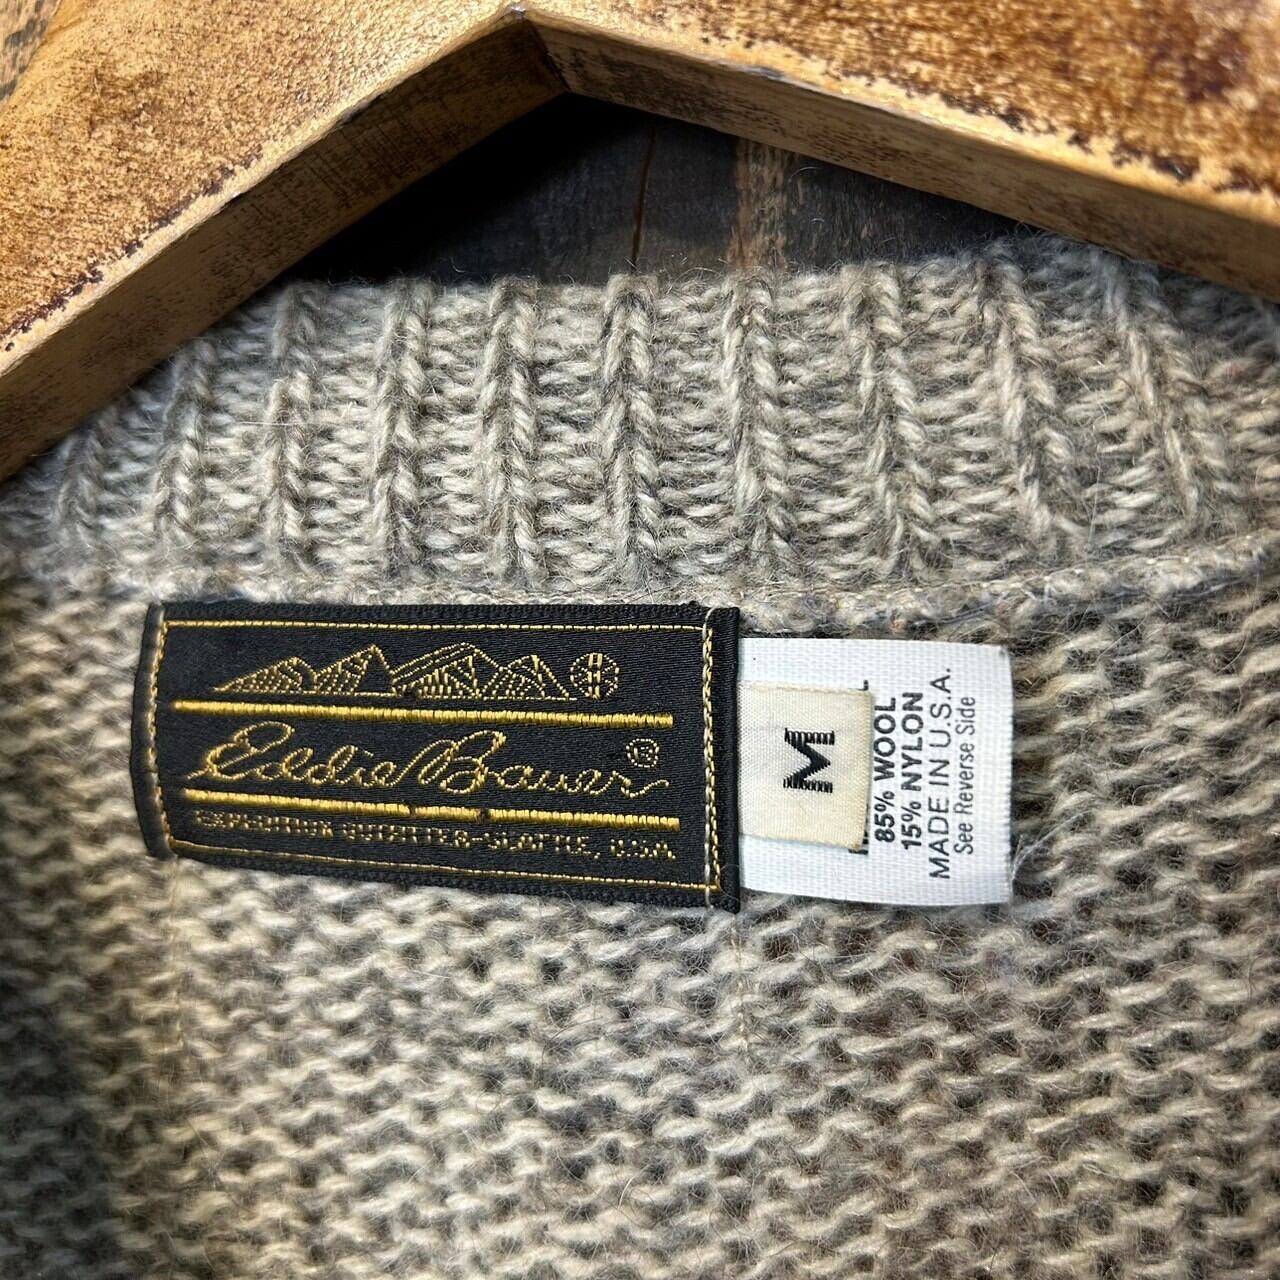 1980’s Eddie Bauer Wool Knit made in USA